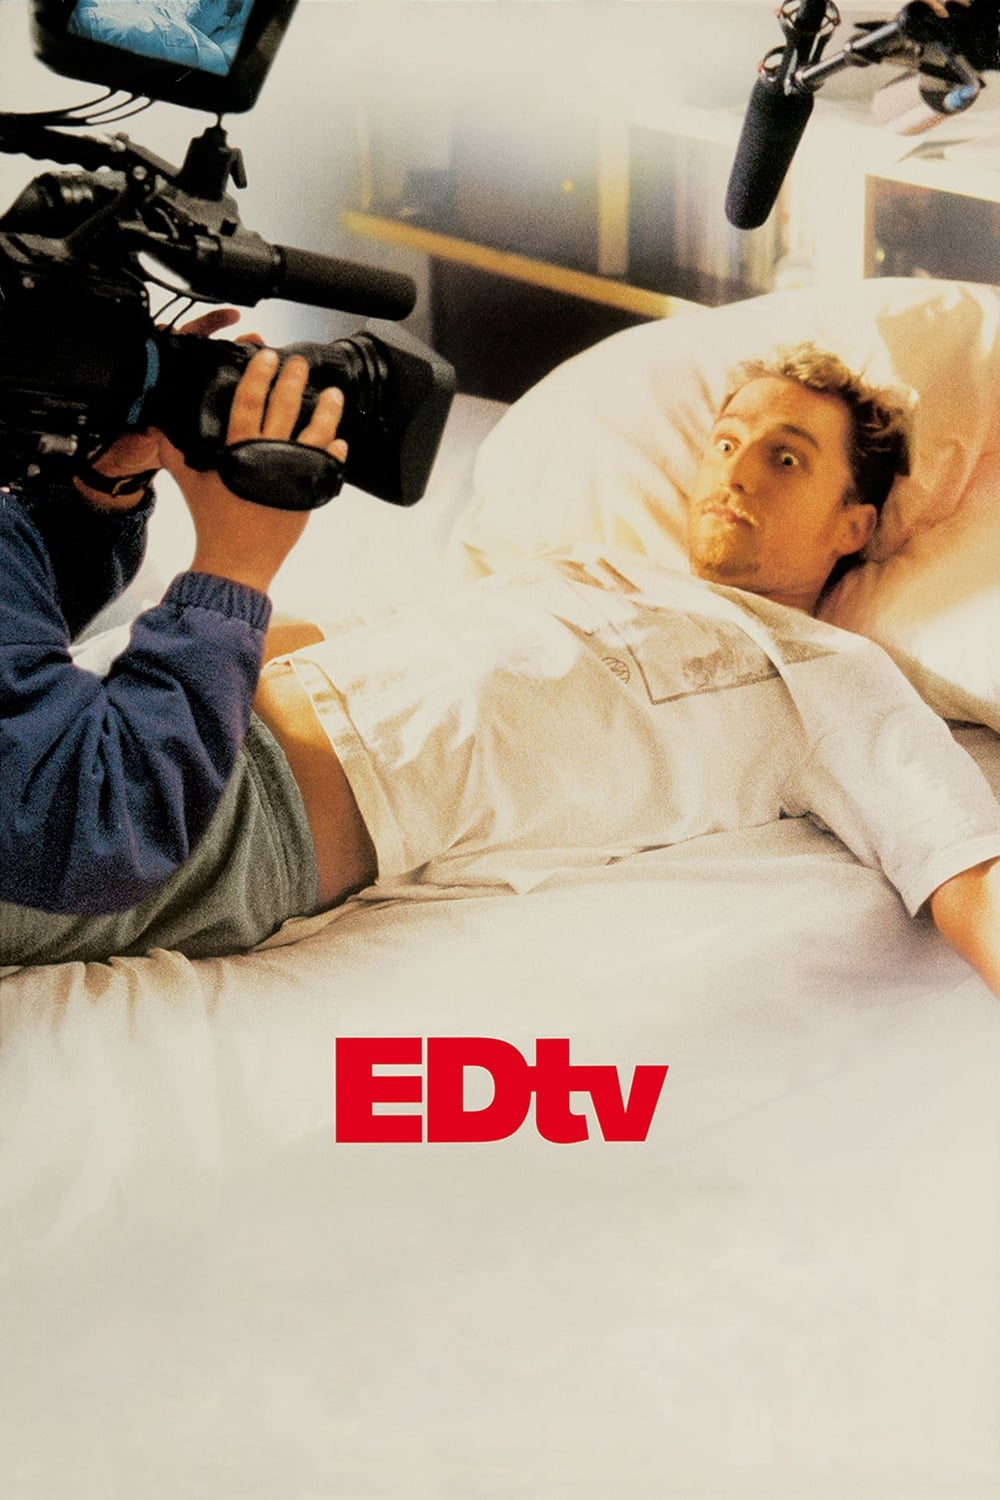 Ed TV (1999)